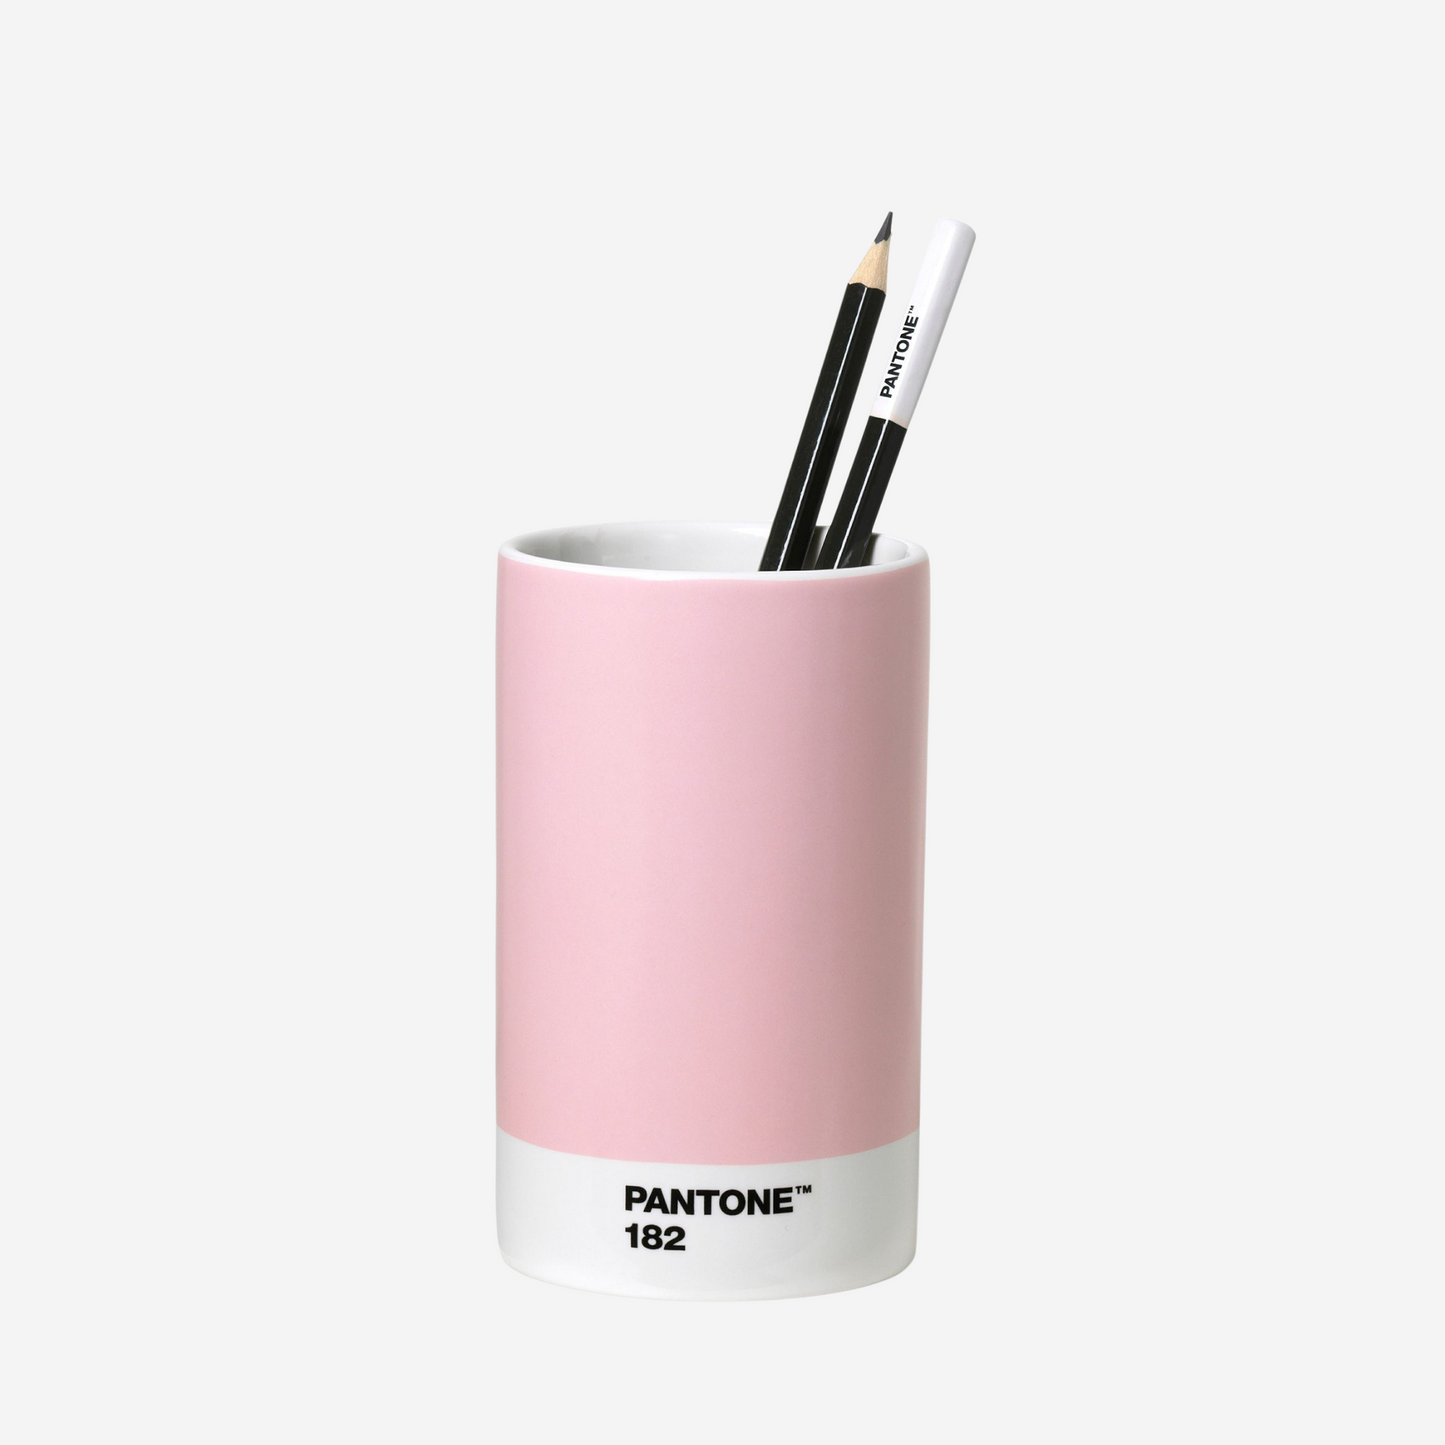 Pantone Pencil Cup - Light Pink 182